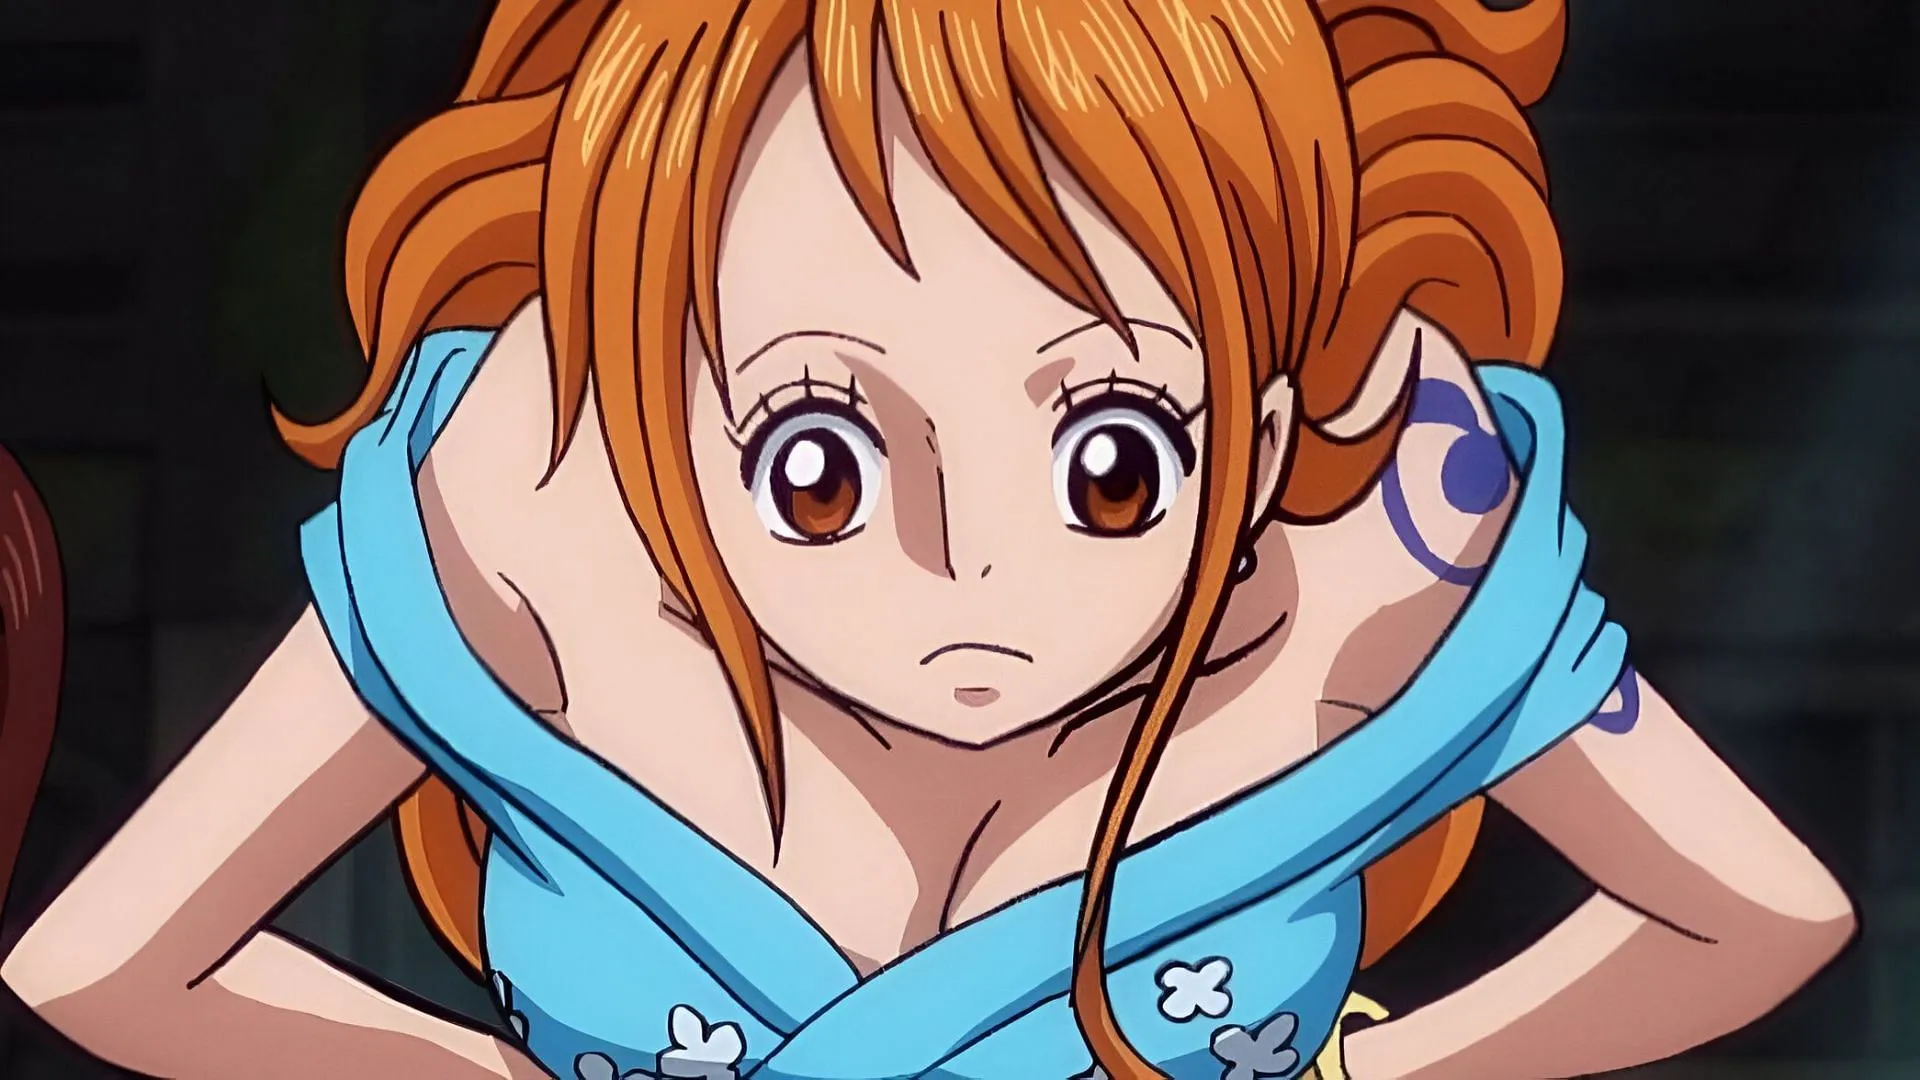 Tại sao fan service không cần thiết và có thể gây hại cho One Piece?